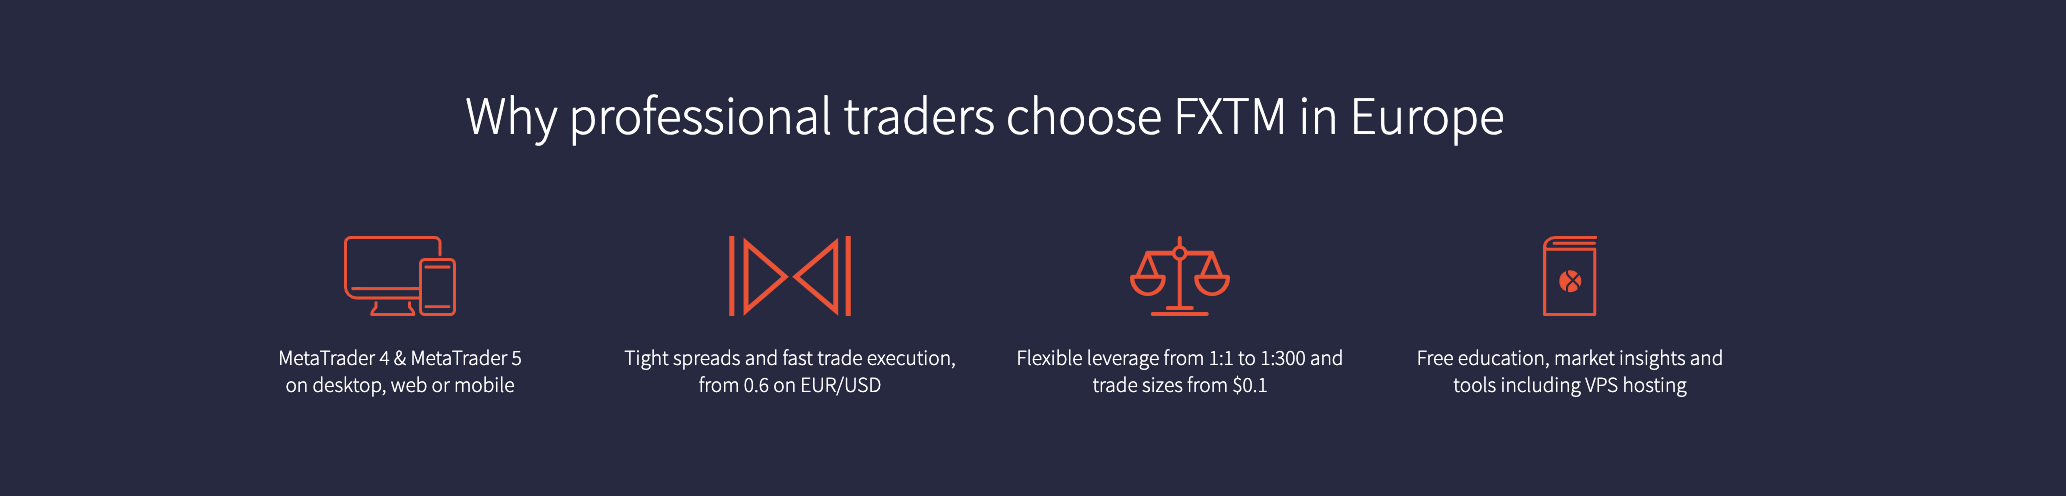 De voordelen van handelen met FXTM